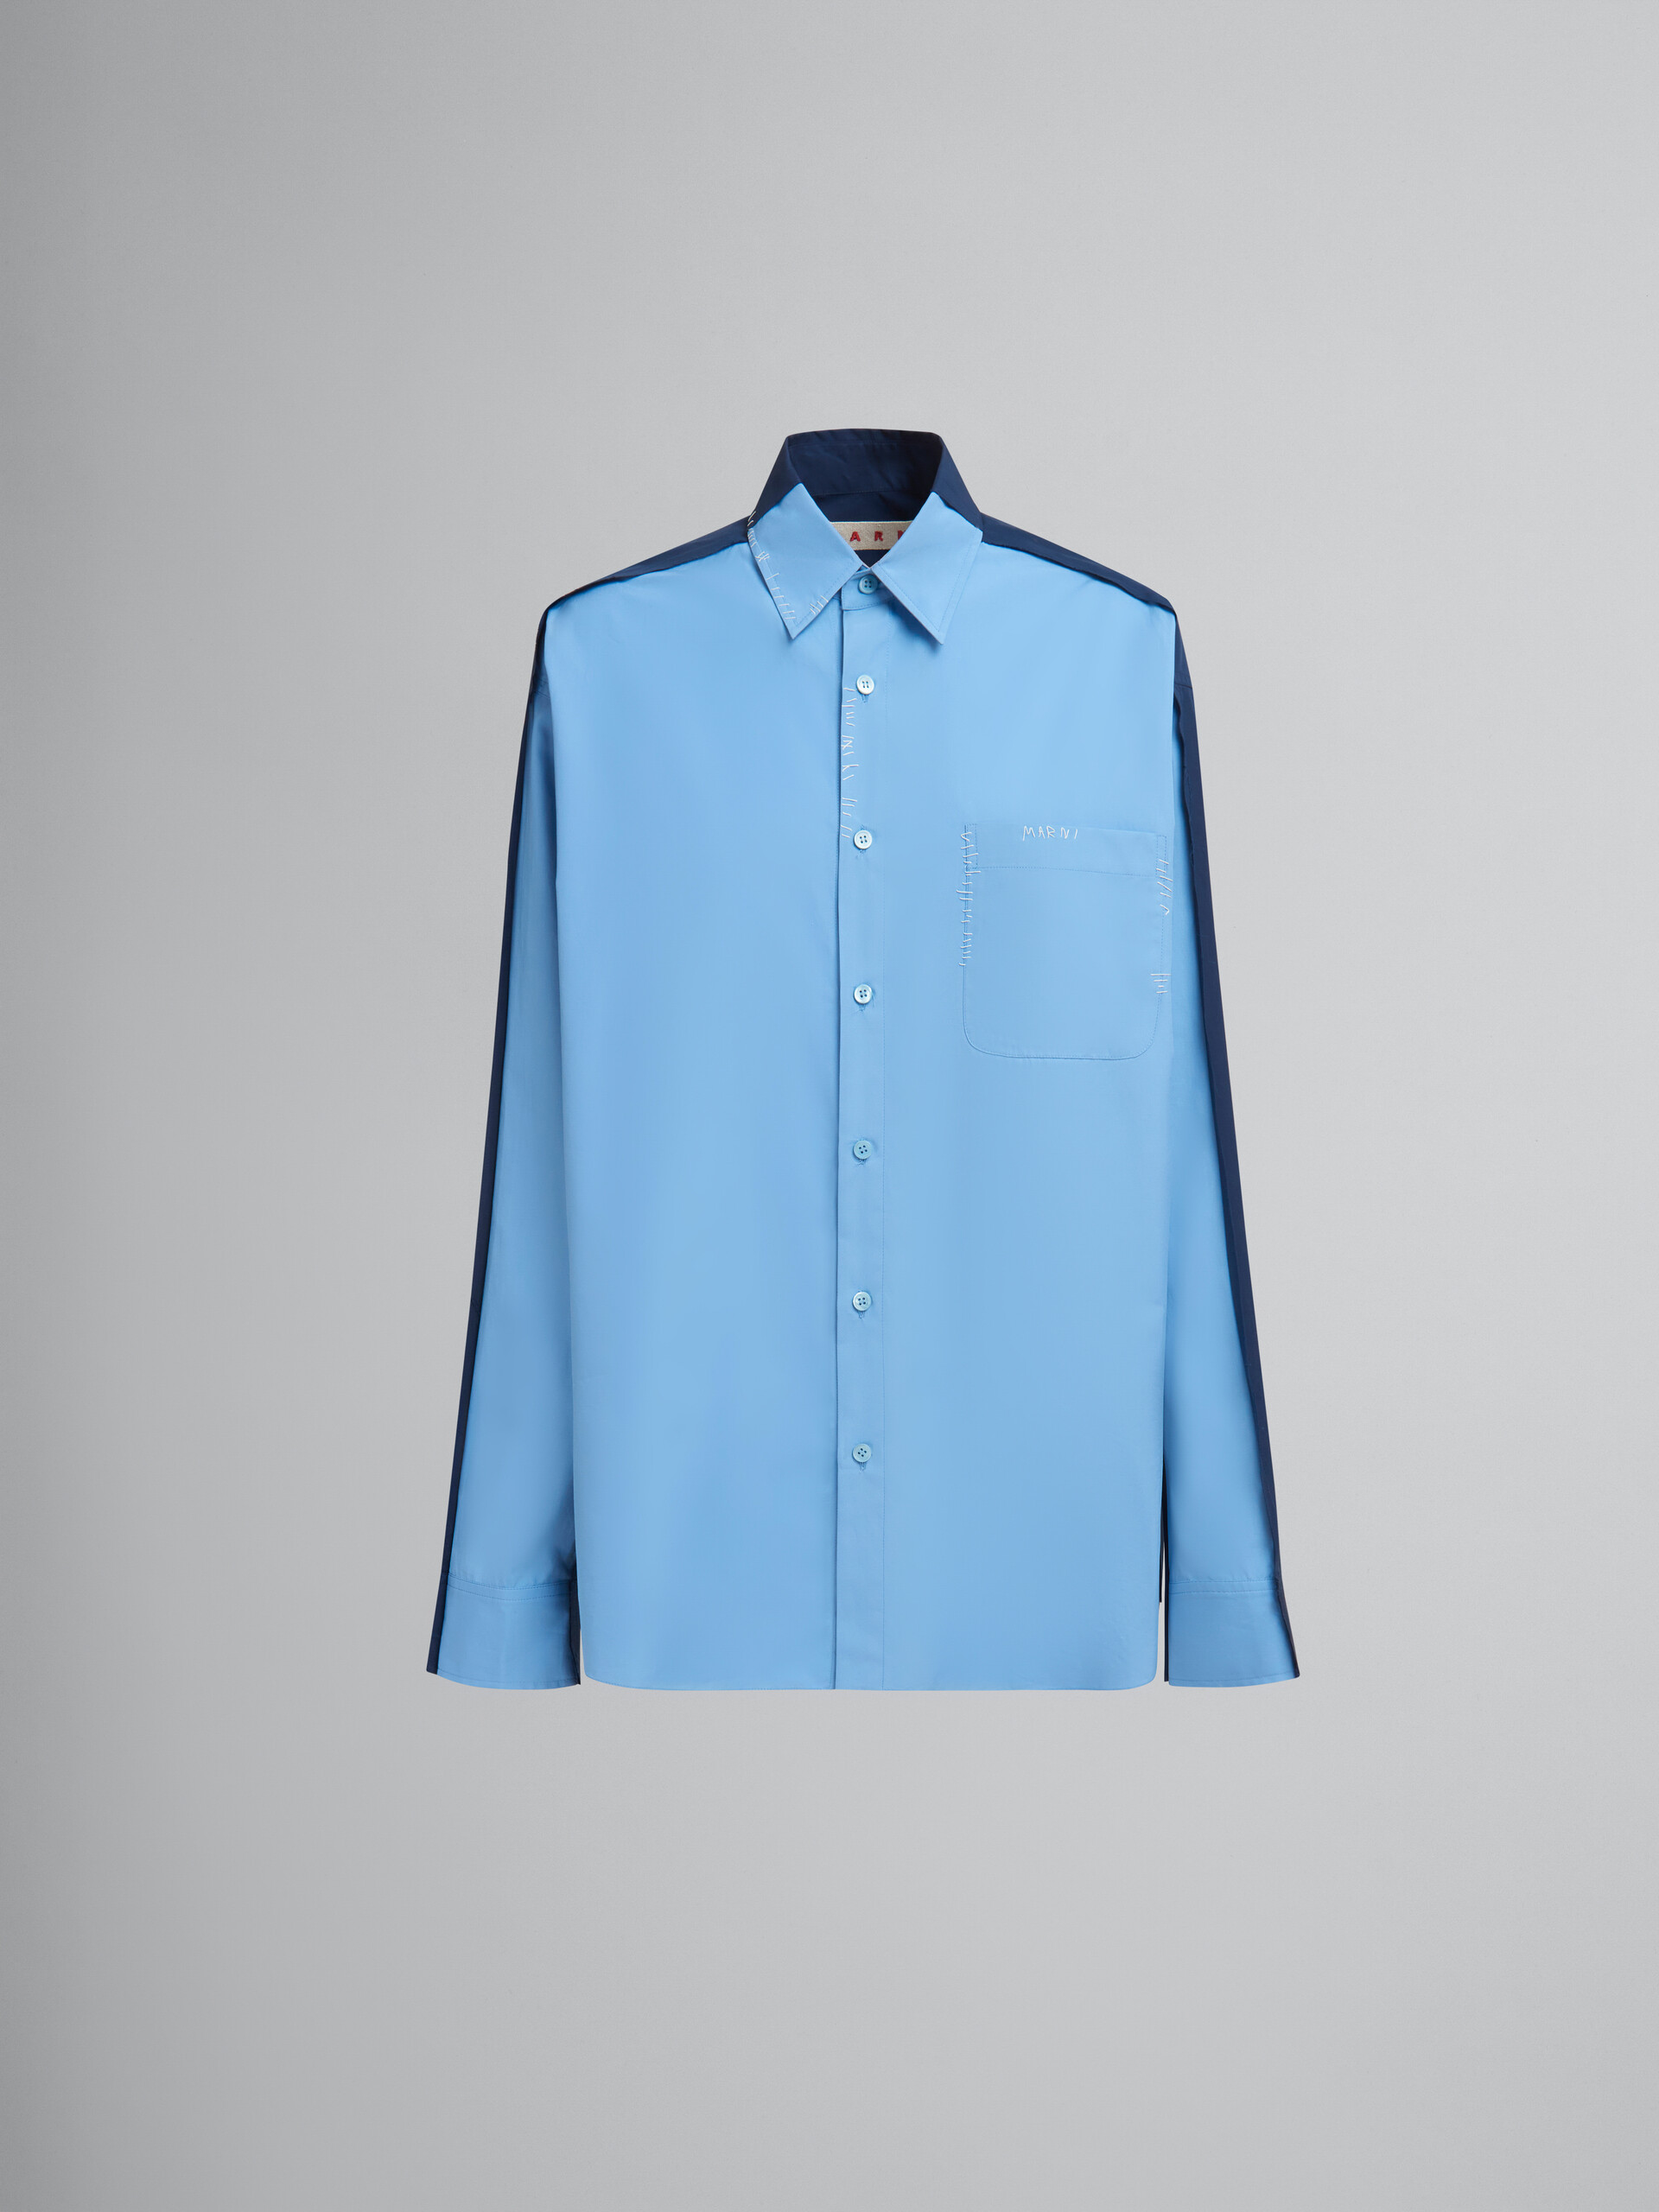 ブルー コントラストバック オーガニックポプリン製シャツ - シャツ - Image 1